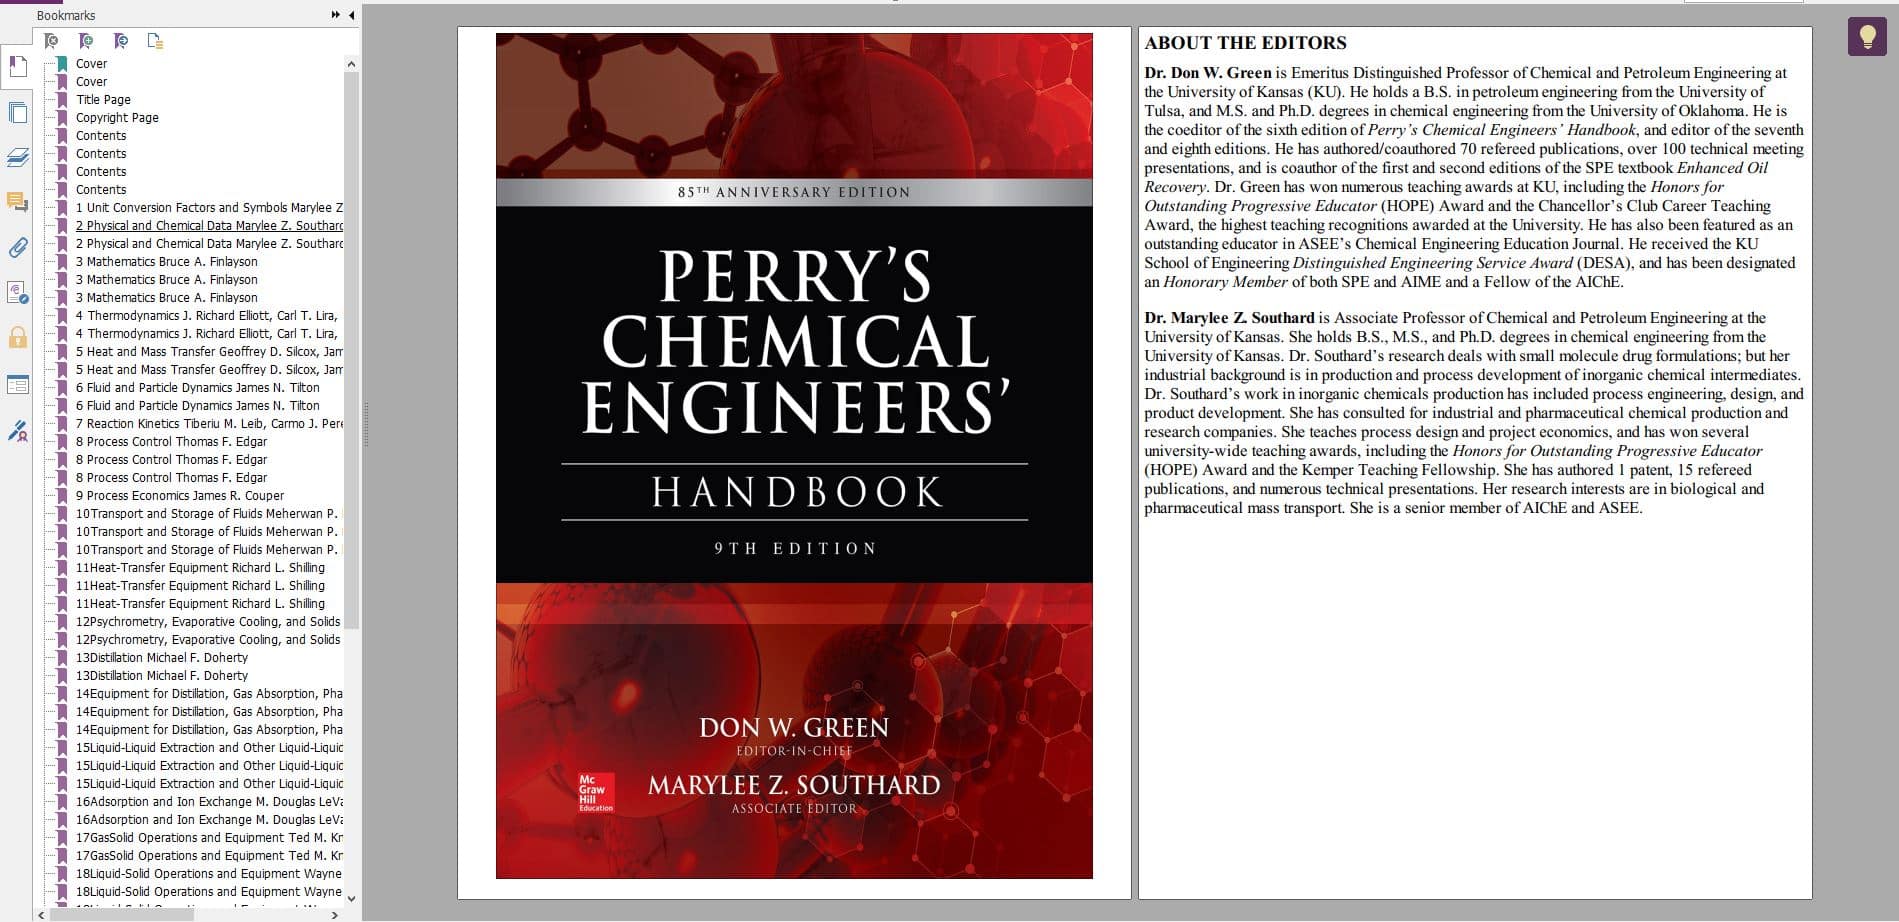 دانلود کتاب هندبوک مهندسی شیمی پری - perry's chemical engineering handbook 9th edition free download